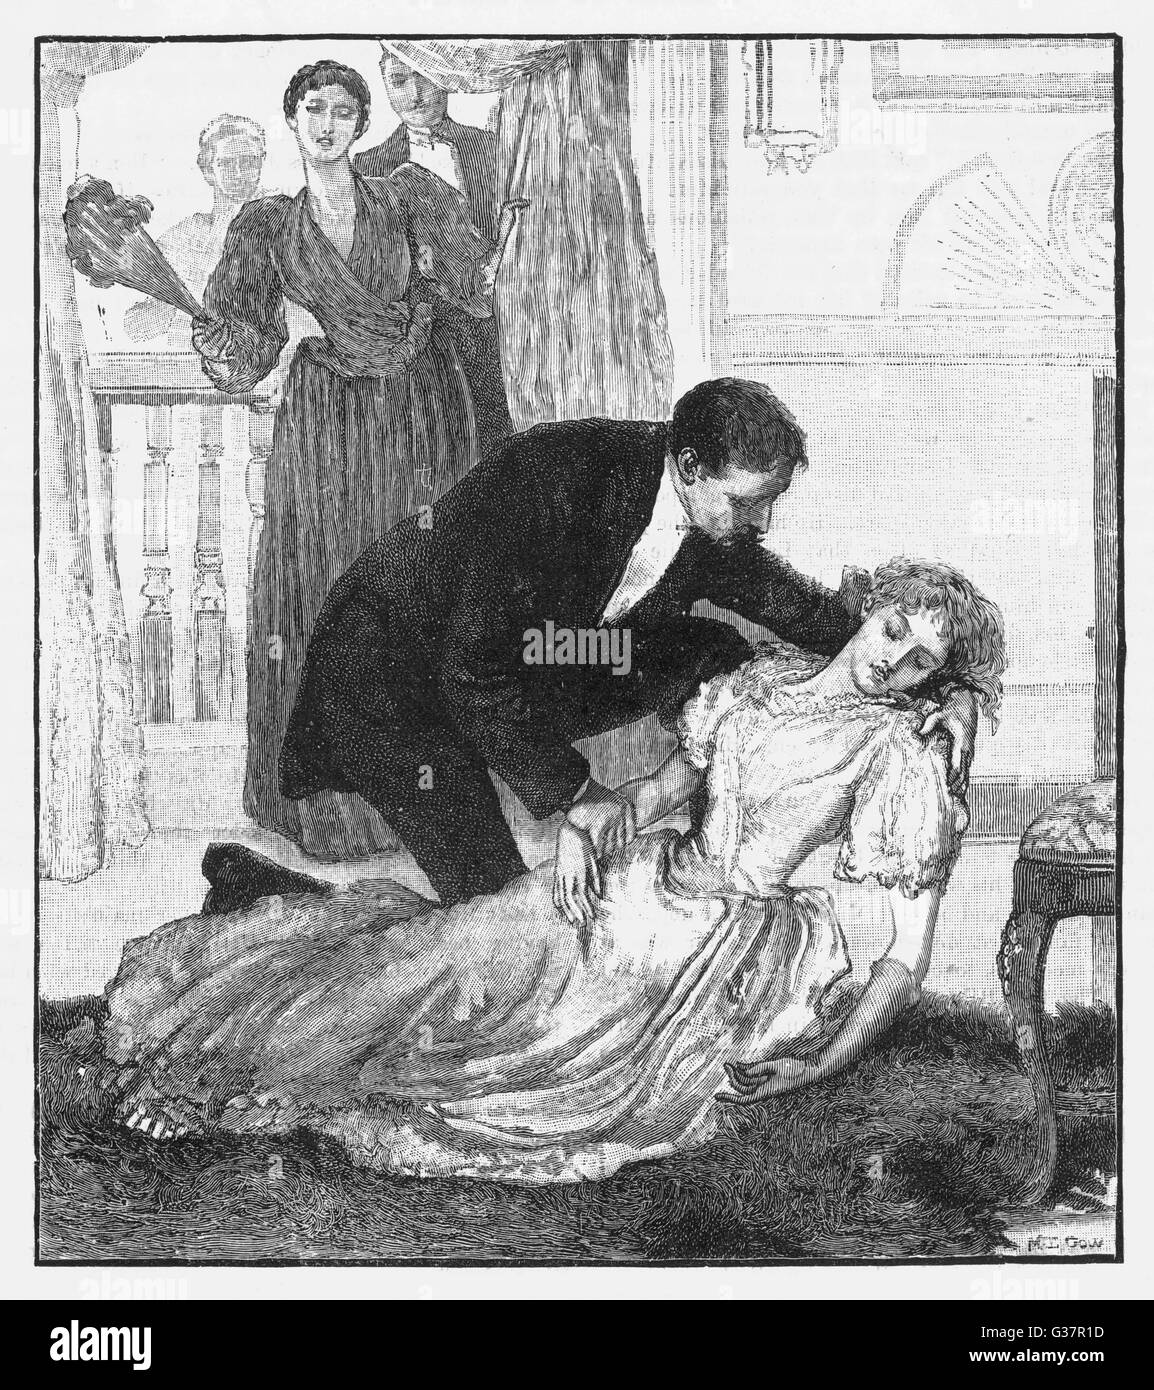 "Gefunden Sie Daisy in ohnmächtig auf dem Boden und Kapitän Hallam beugte sich über sie."        Datum: 1890 Stockfoto